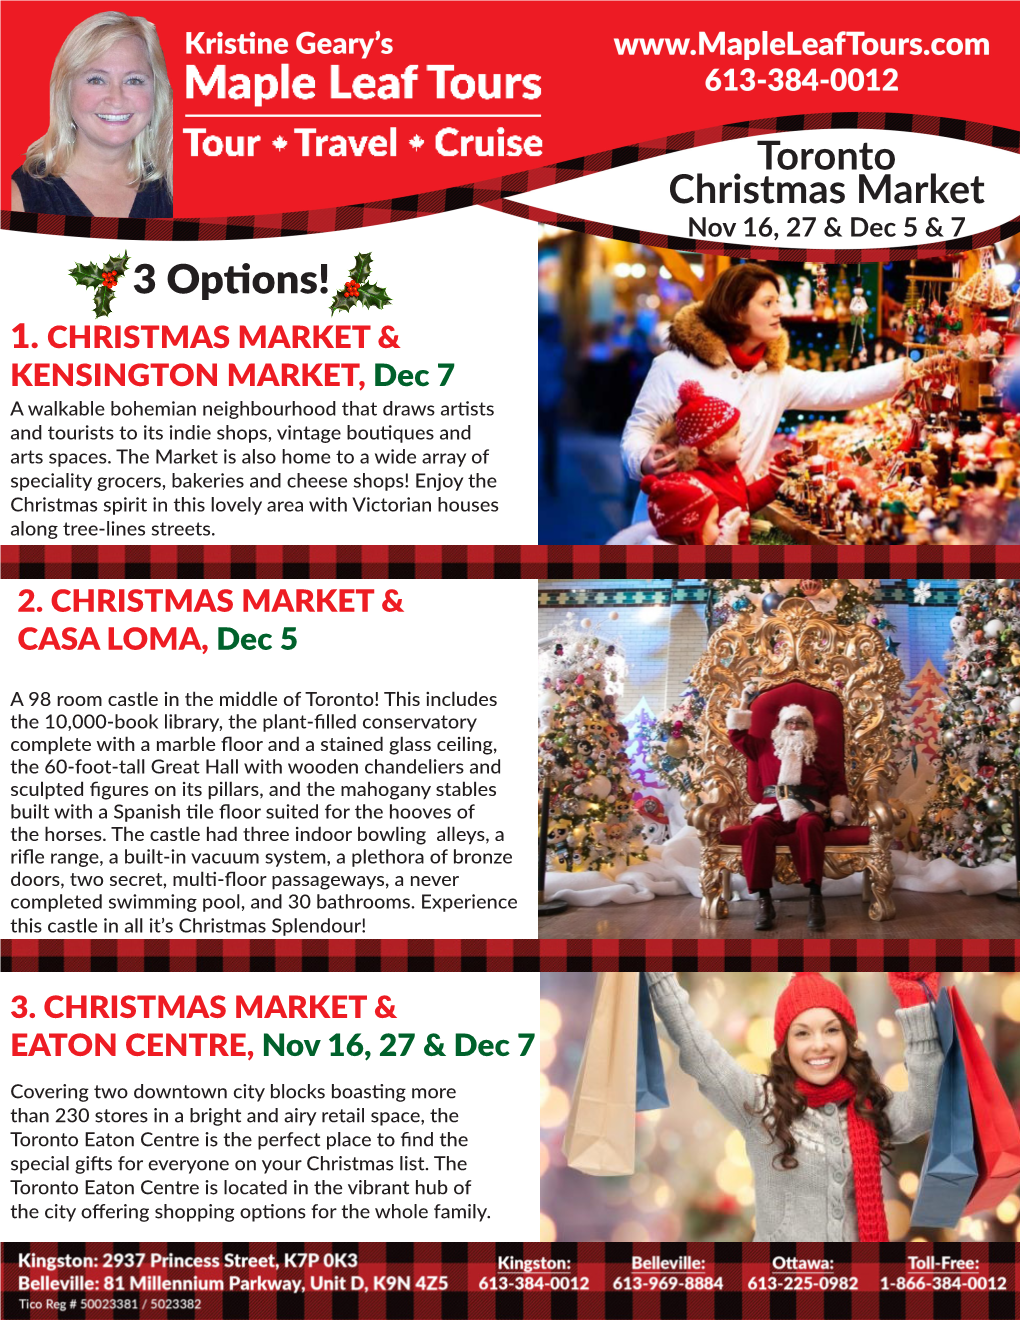 Toronto Christmas Market Nov 16, 27 & Dec 5 & 7 3 Options! 1